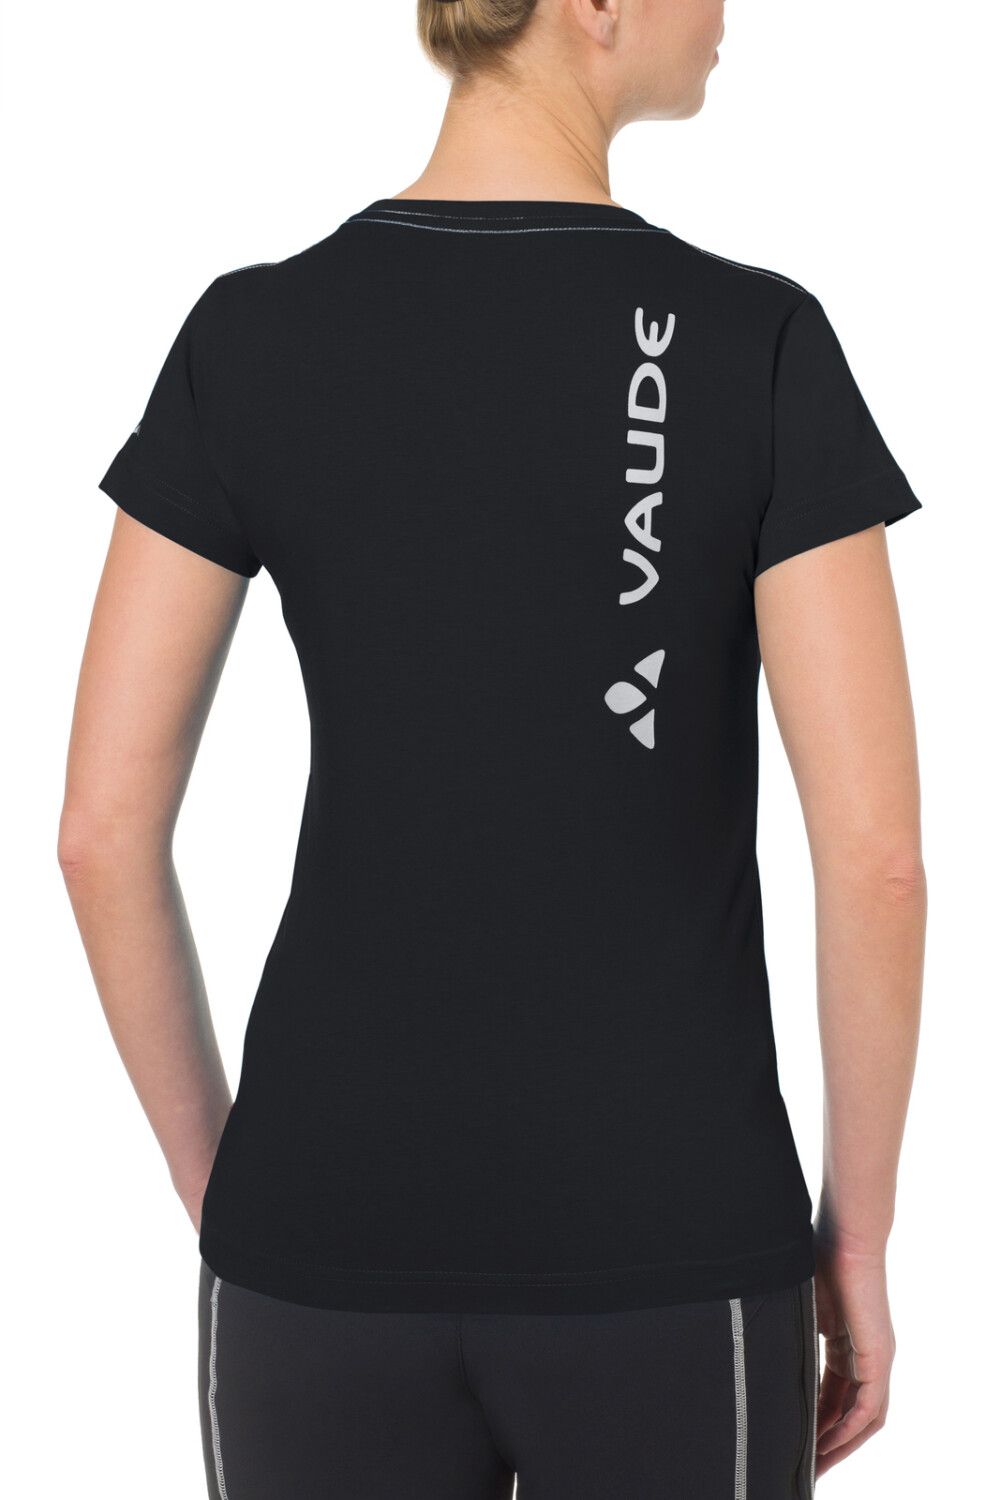 VAUDE Women's Brand Shirt (Bild 4)